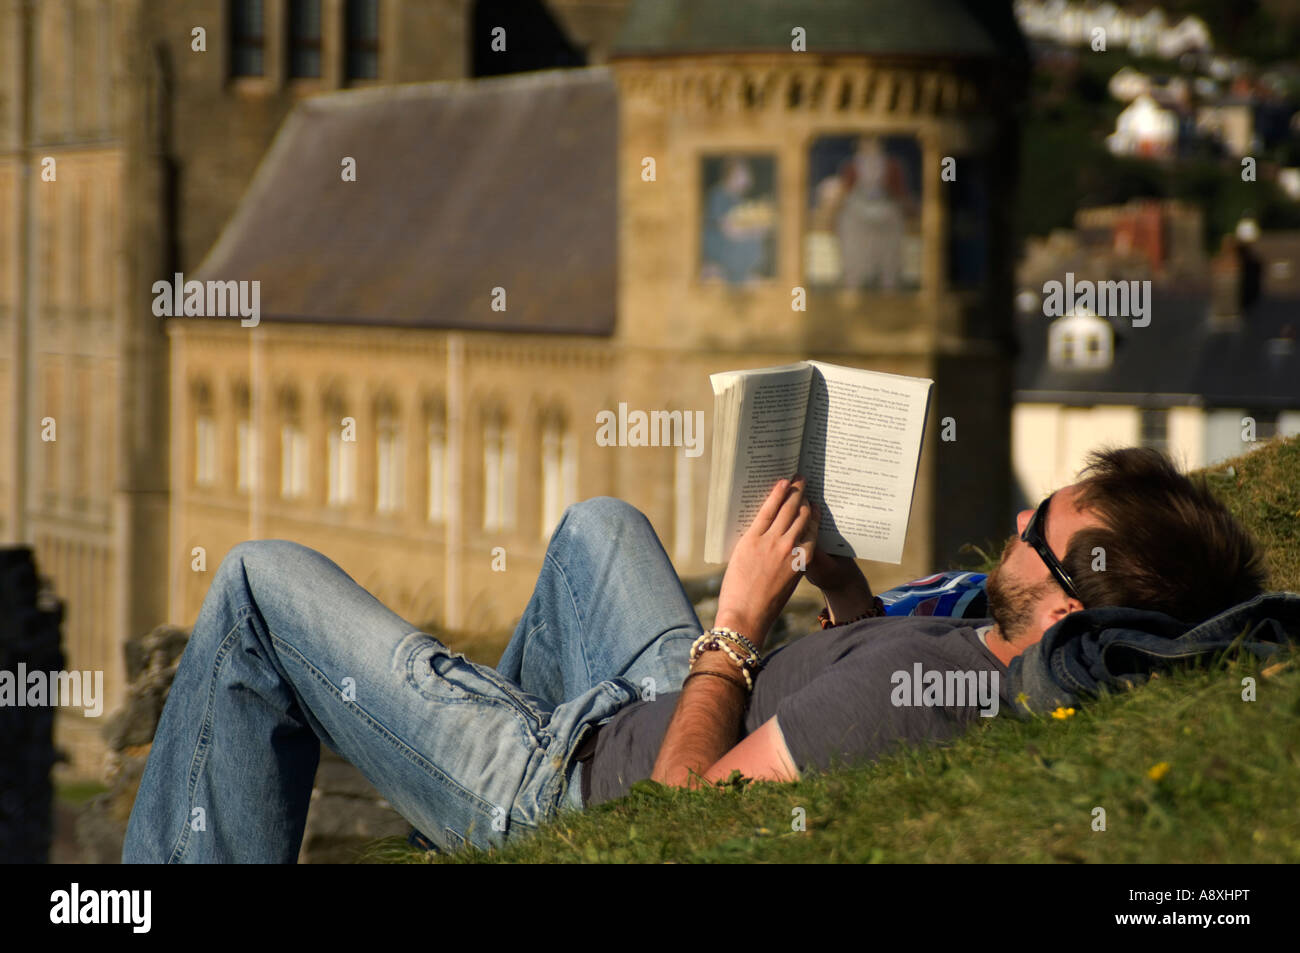 L'homme allongé sur le dos sur l'herbe la lecture d'un livre avec l'University of Wales Aberystwyth Ancien Collège en arrière-plan, l'été Banque D'Images